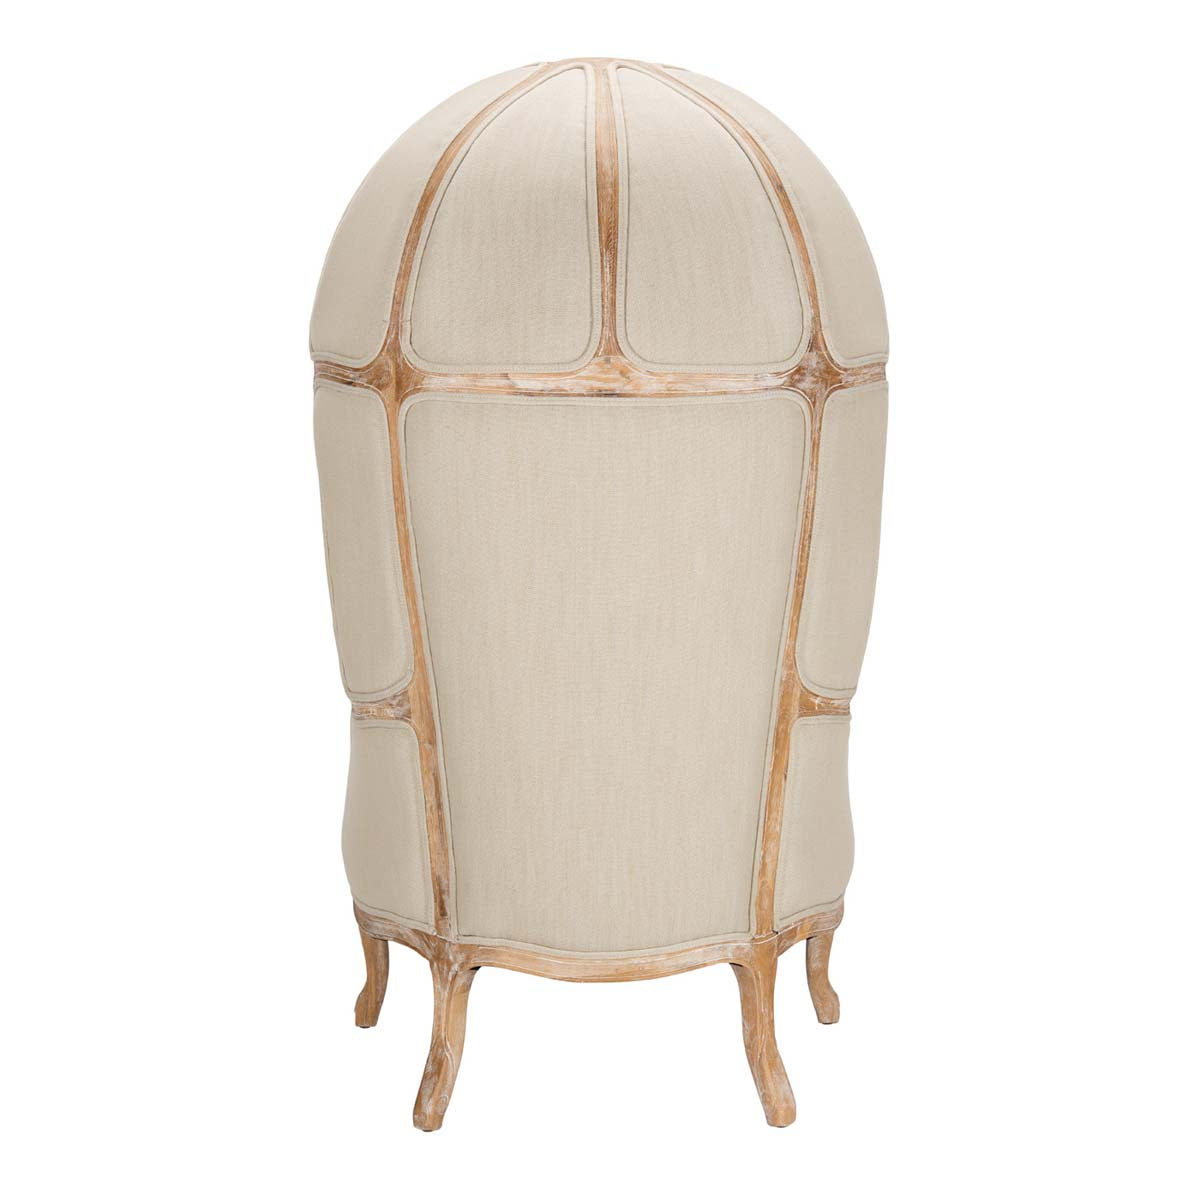 Safavieh Couture Sabine Natural Linen Balloon Chair , MCR4900